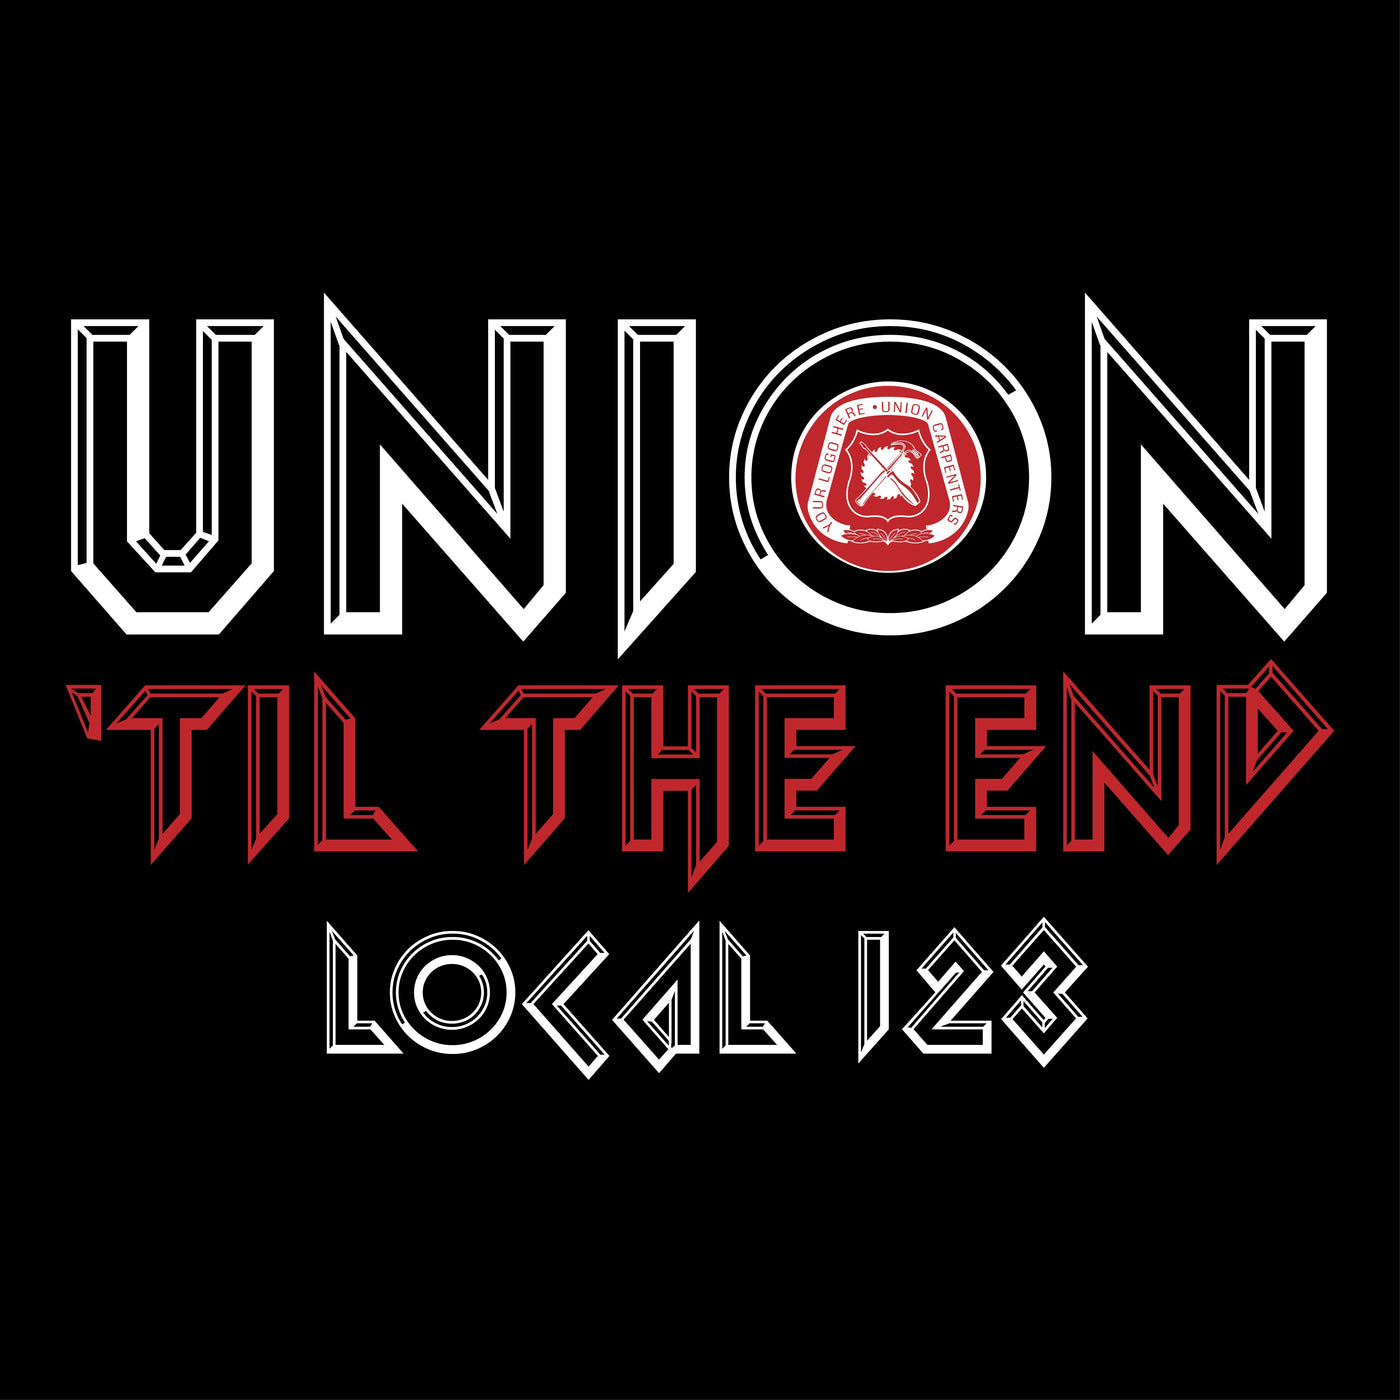 Union Til The End